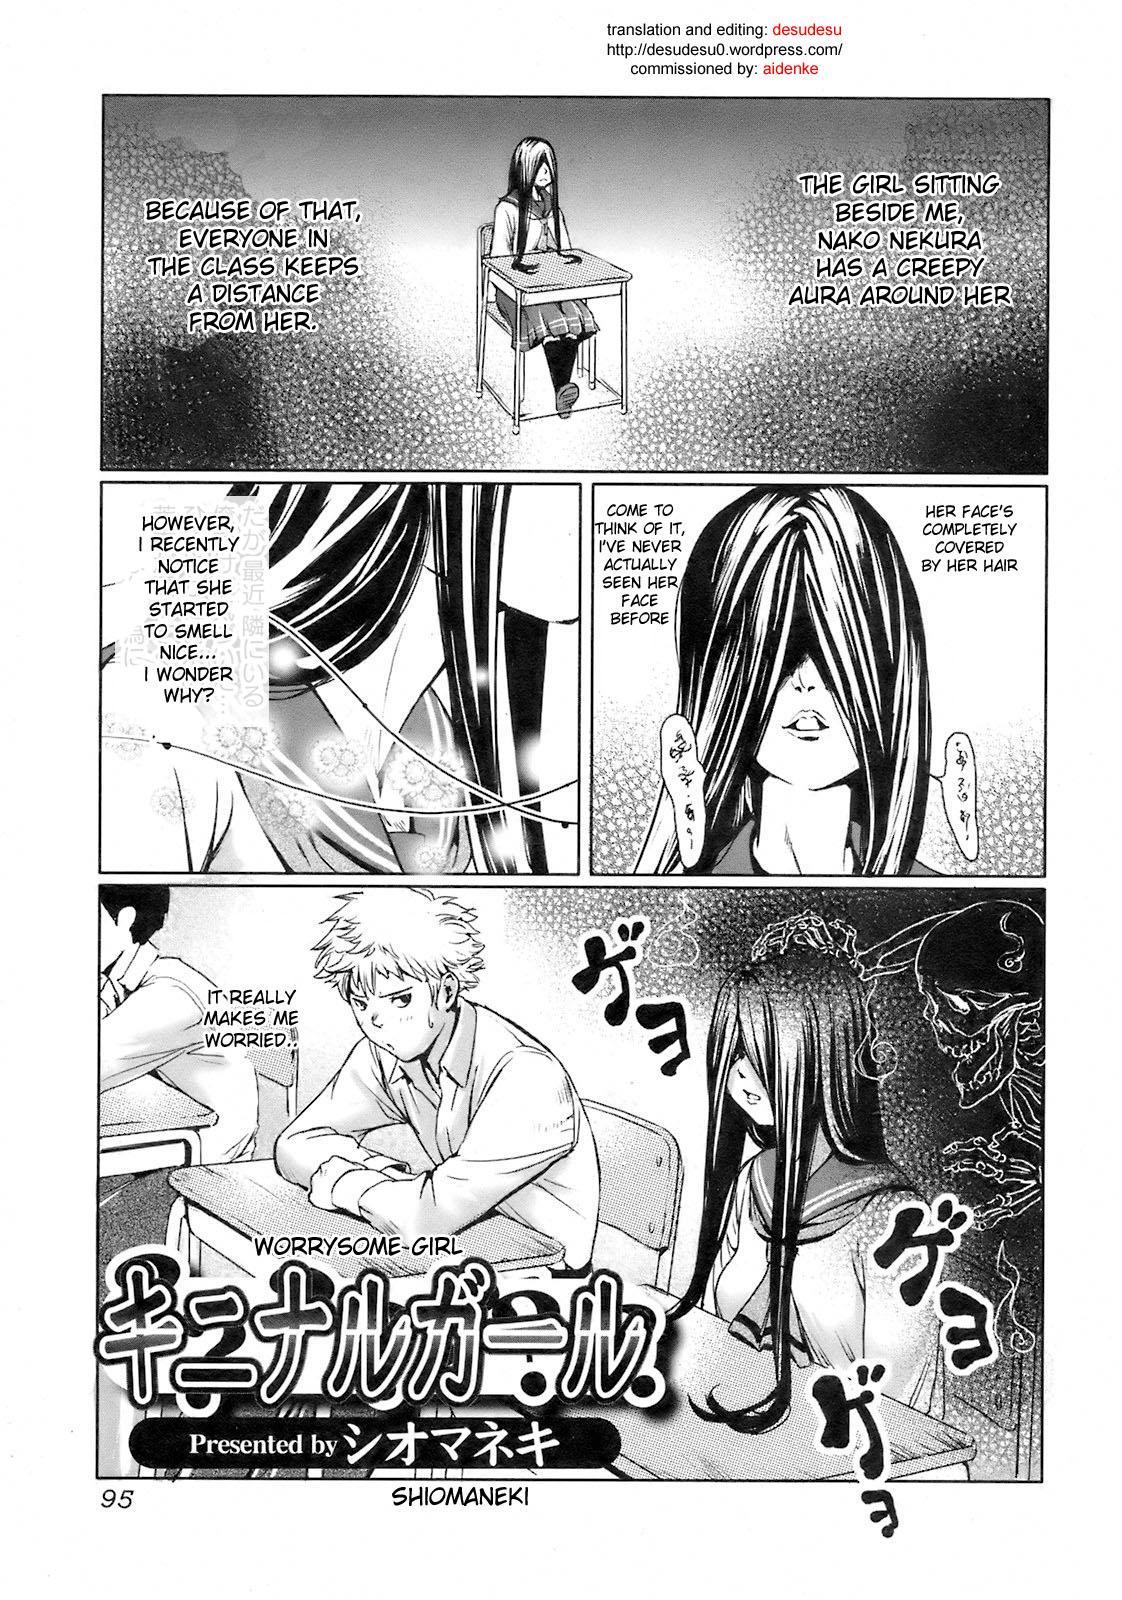 Worrysome Girl hentai manga